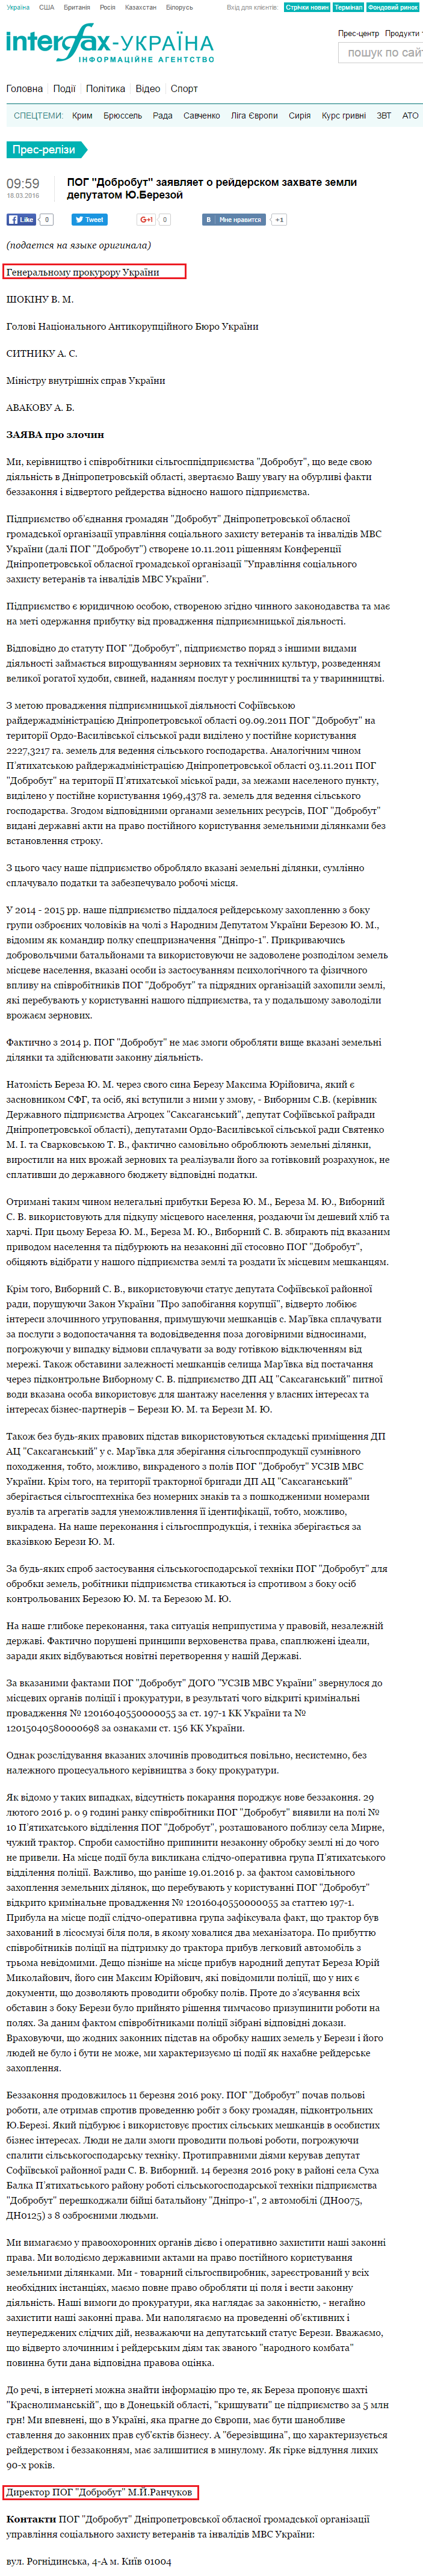 http://ua.interfax.com.ua/news/press-release/331547.html